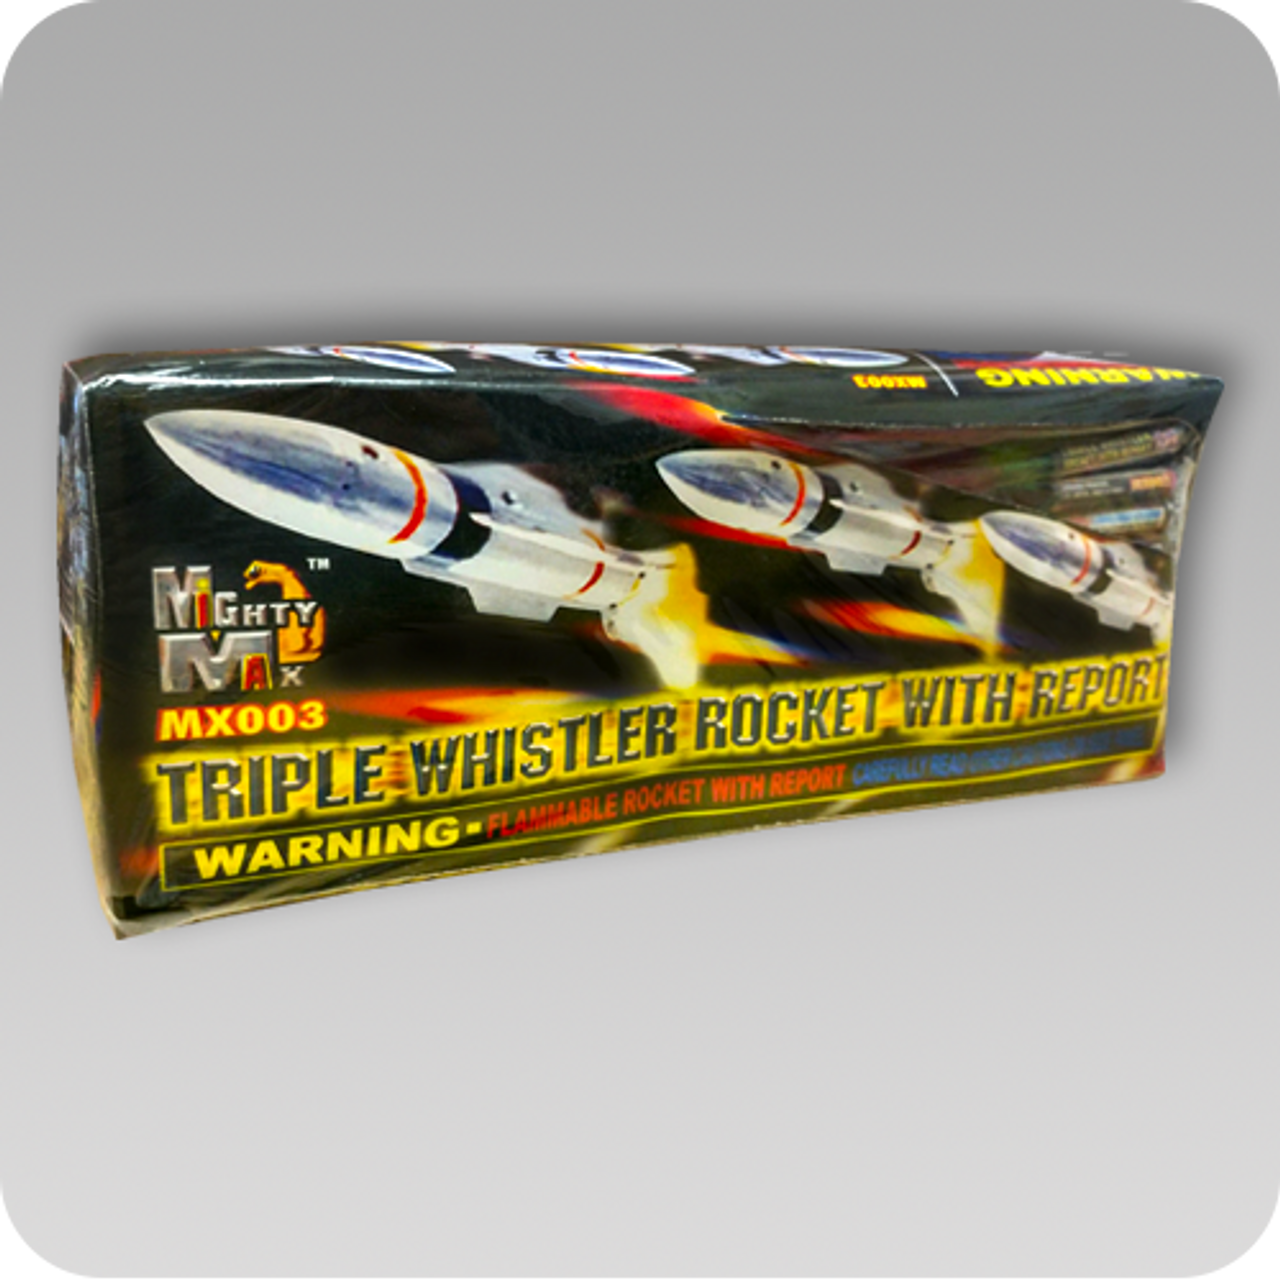 Triple Whistler Rocket - Bottle Rockets